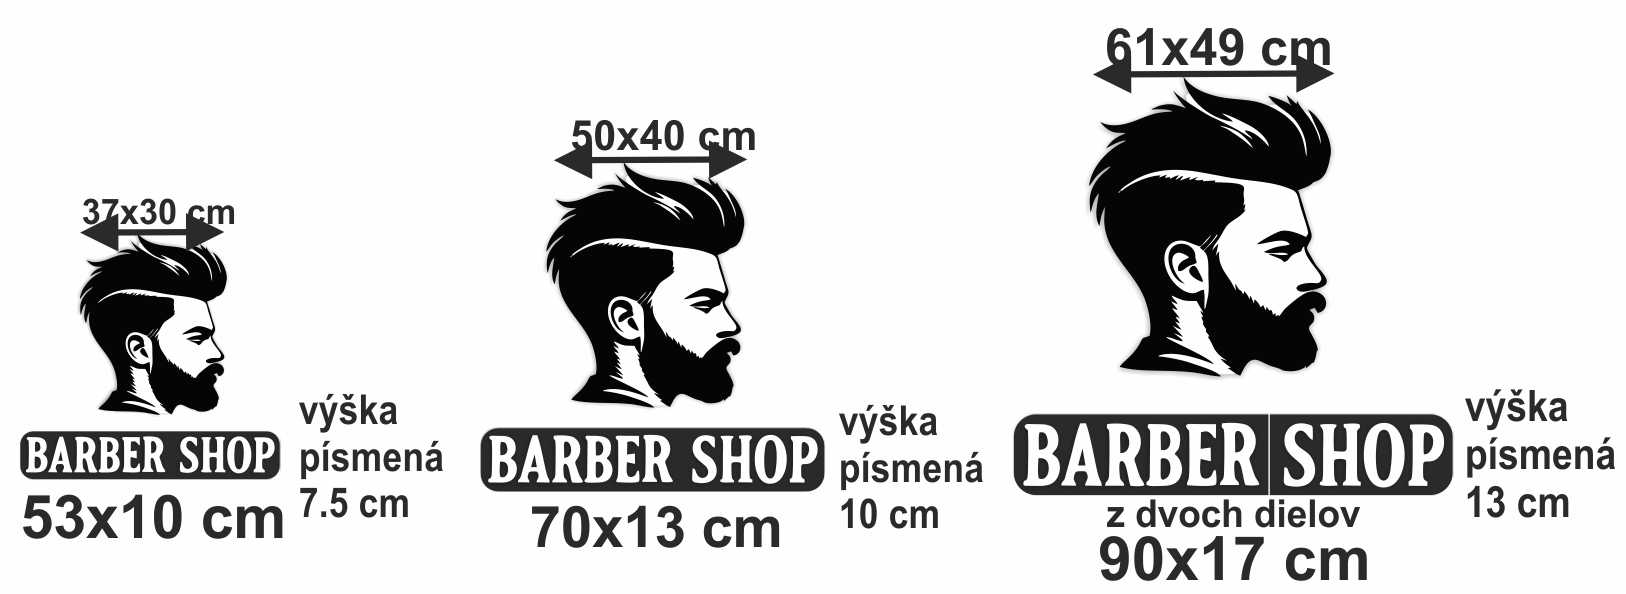 logo na stenu pre barber shop tabuľka rozmerov.